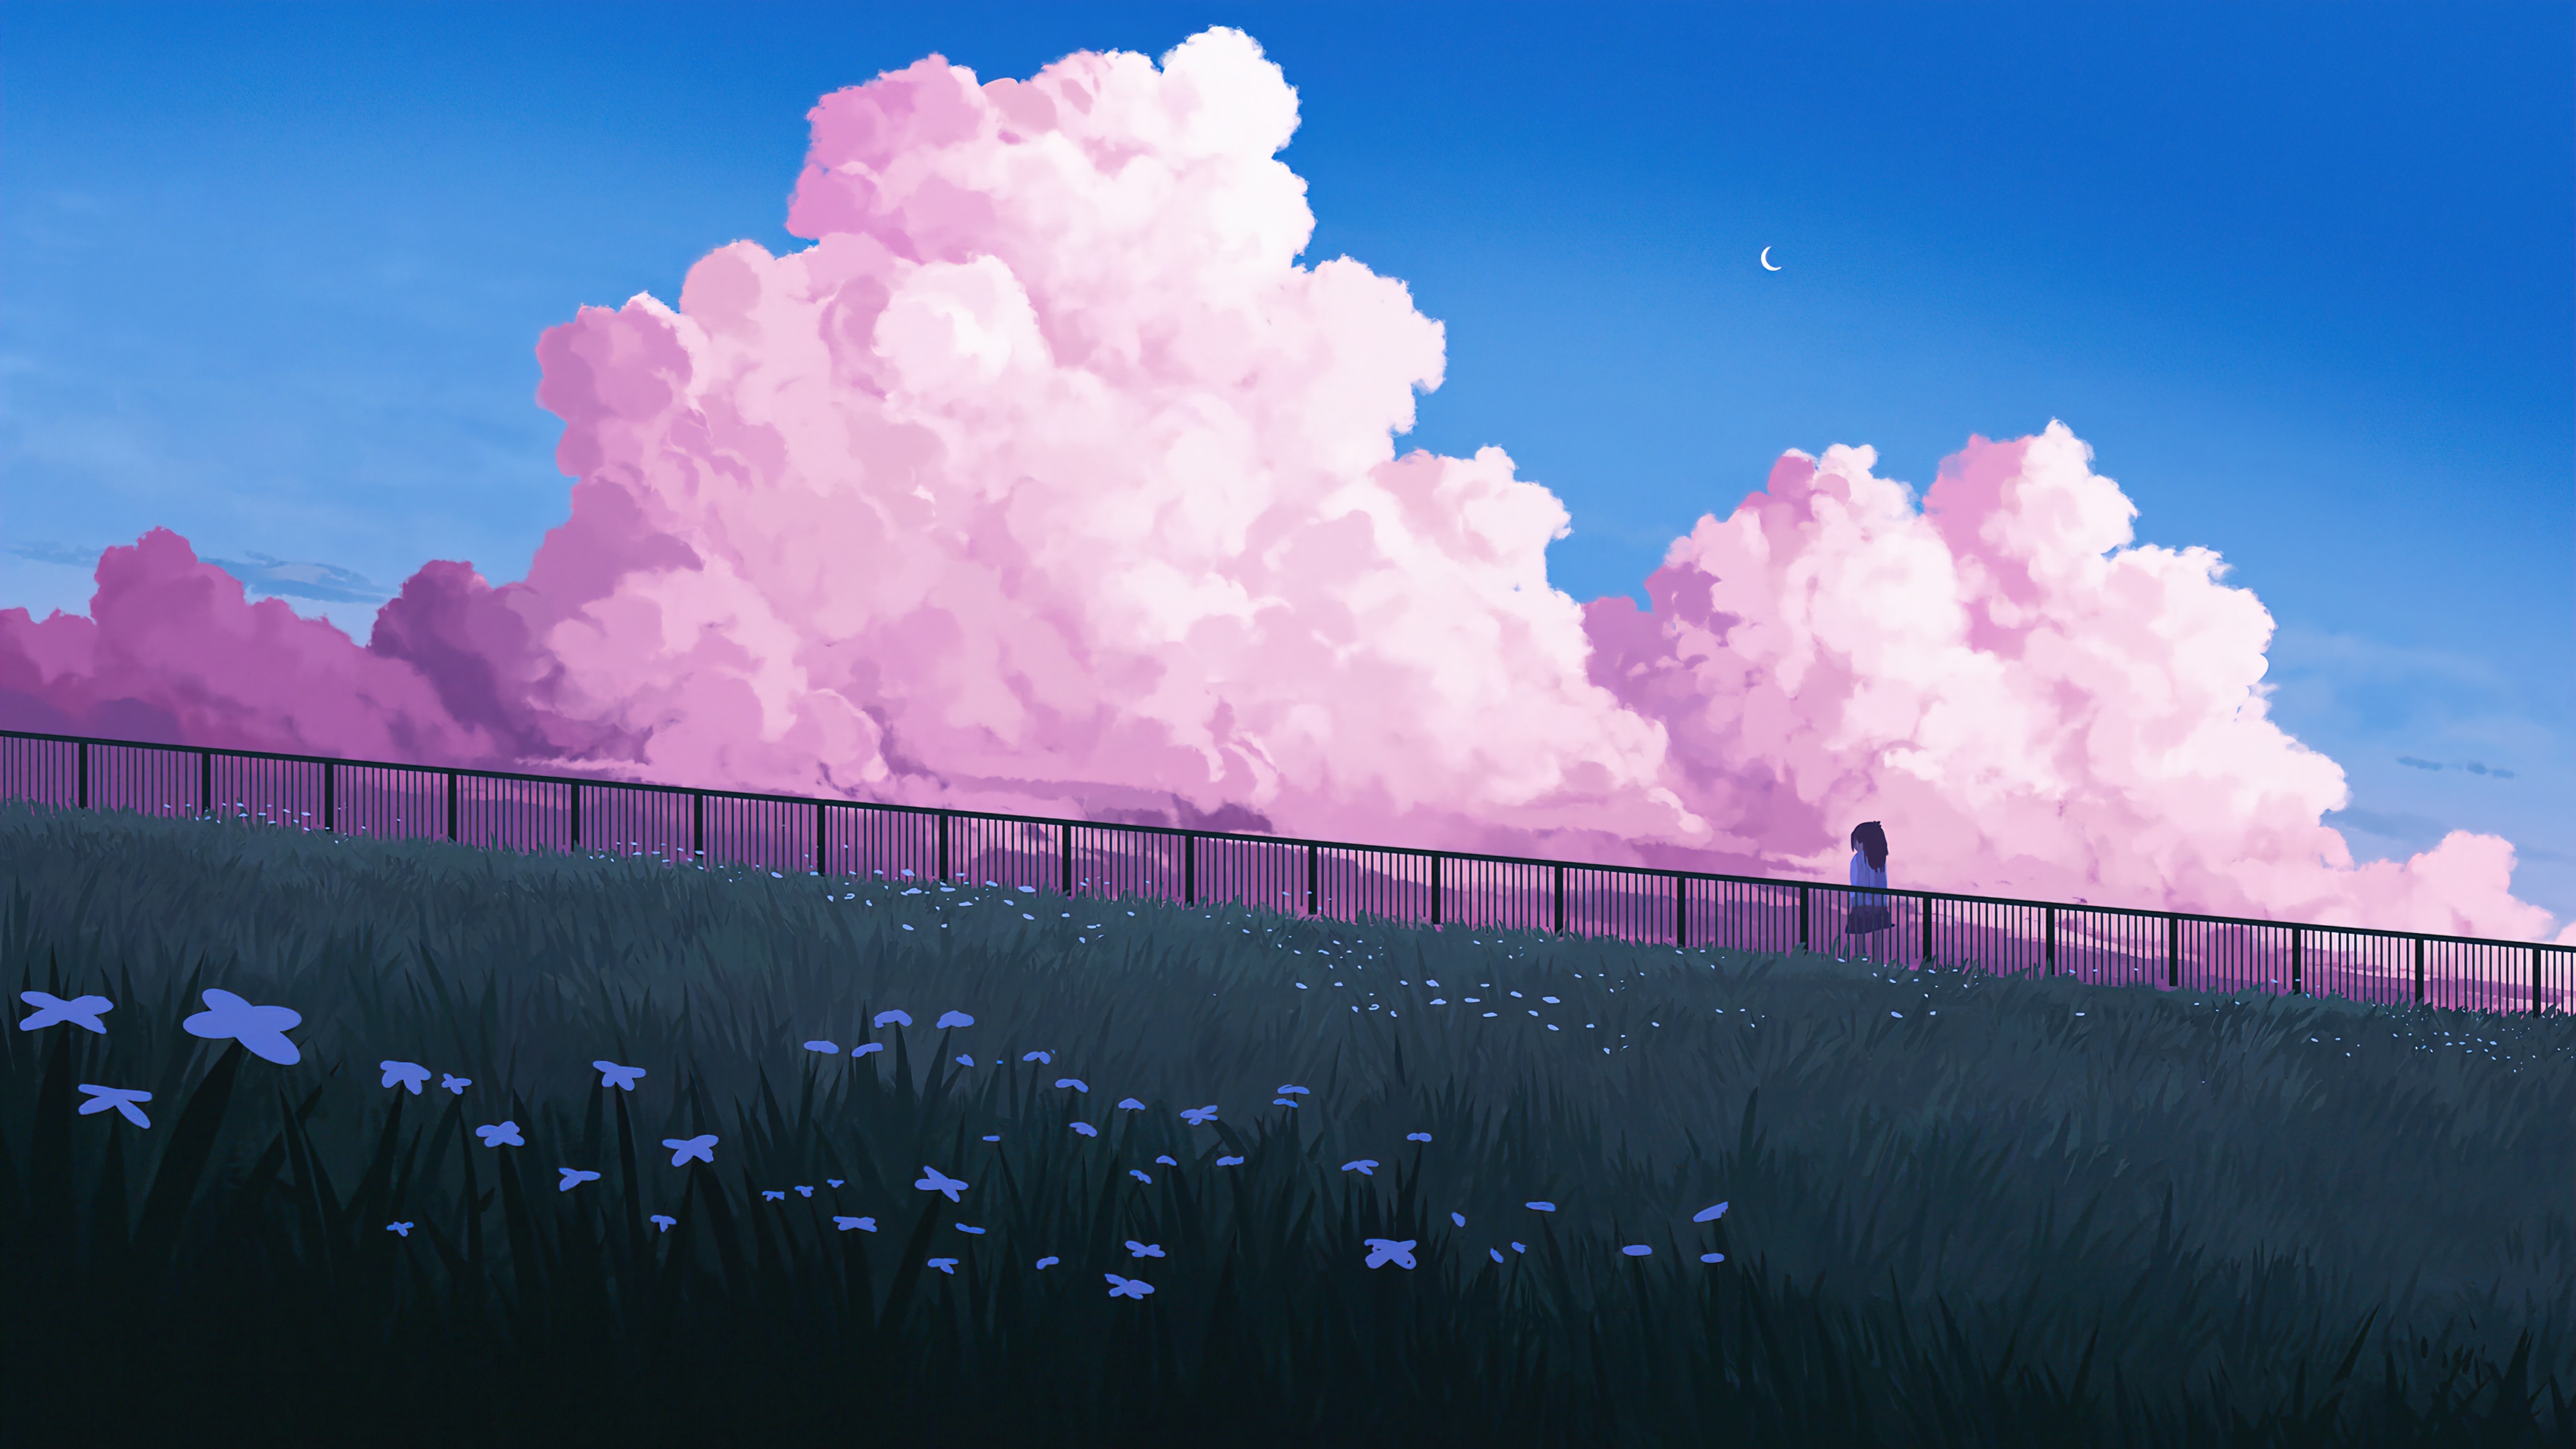 Anime Landscape 4k Ultra HD Wallpaper by Gavryl